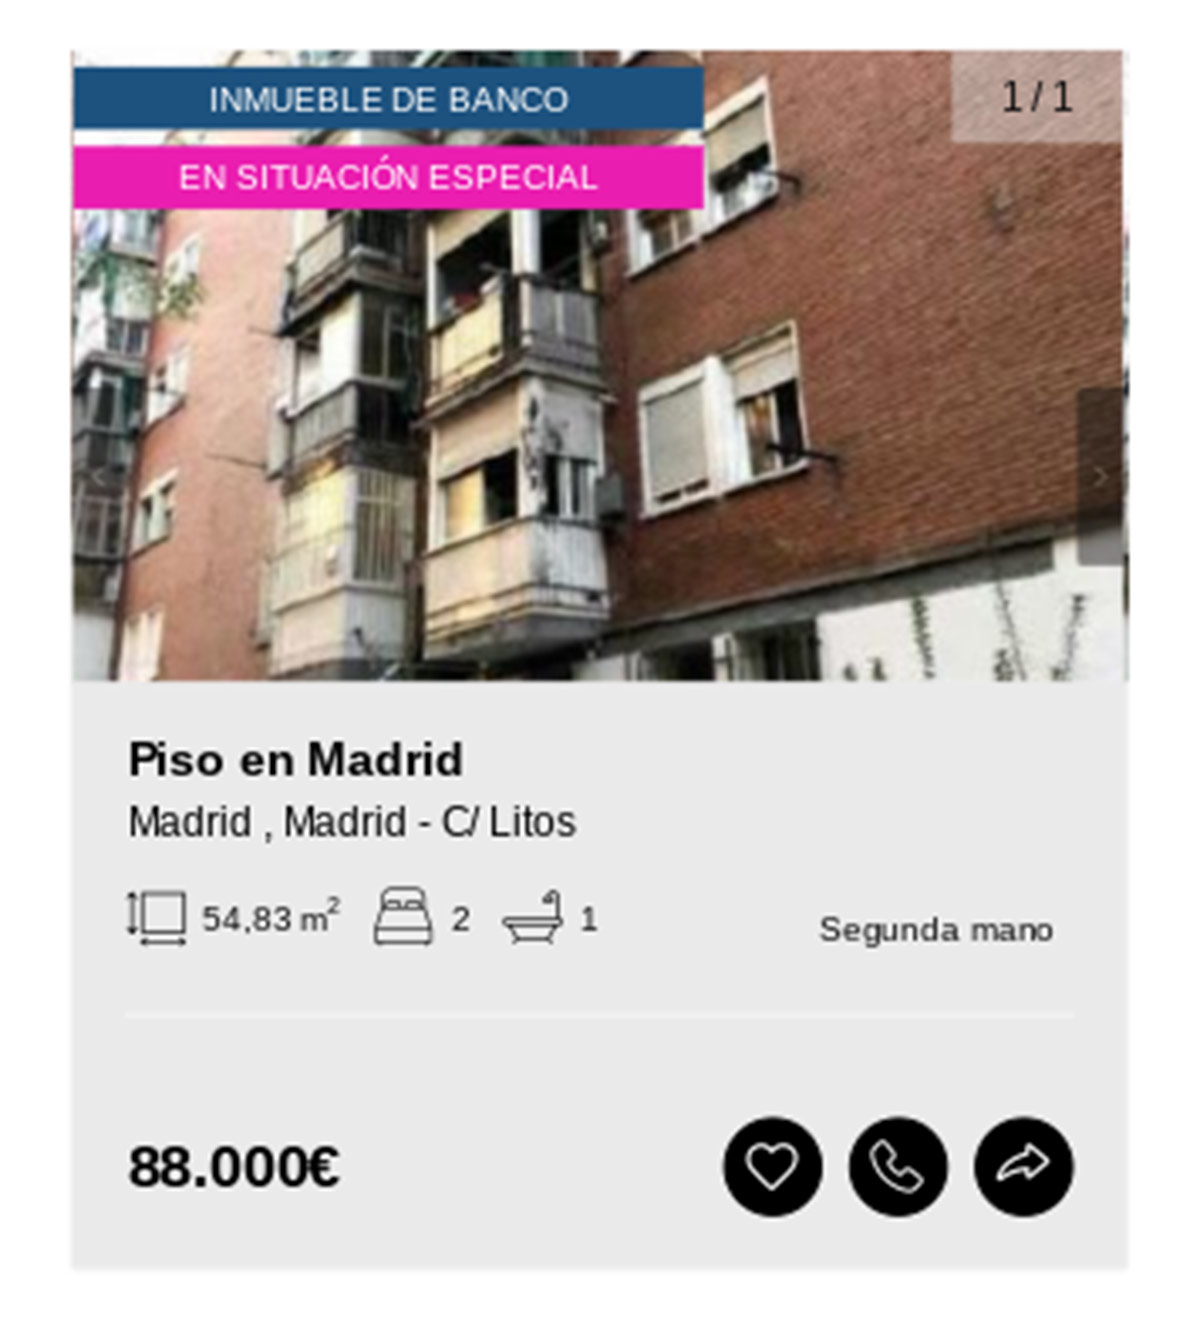 Piso en Madrid de Solvia por 88.000 euros